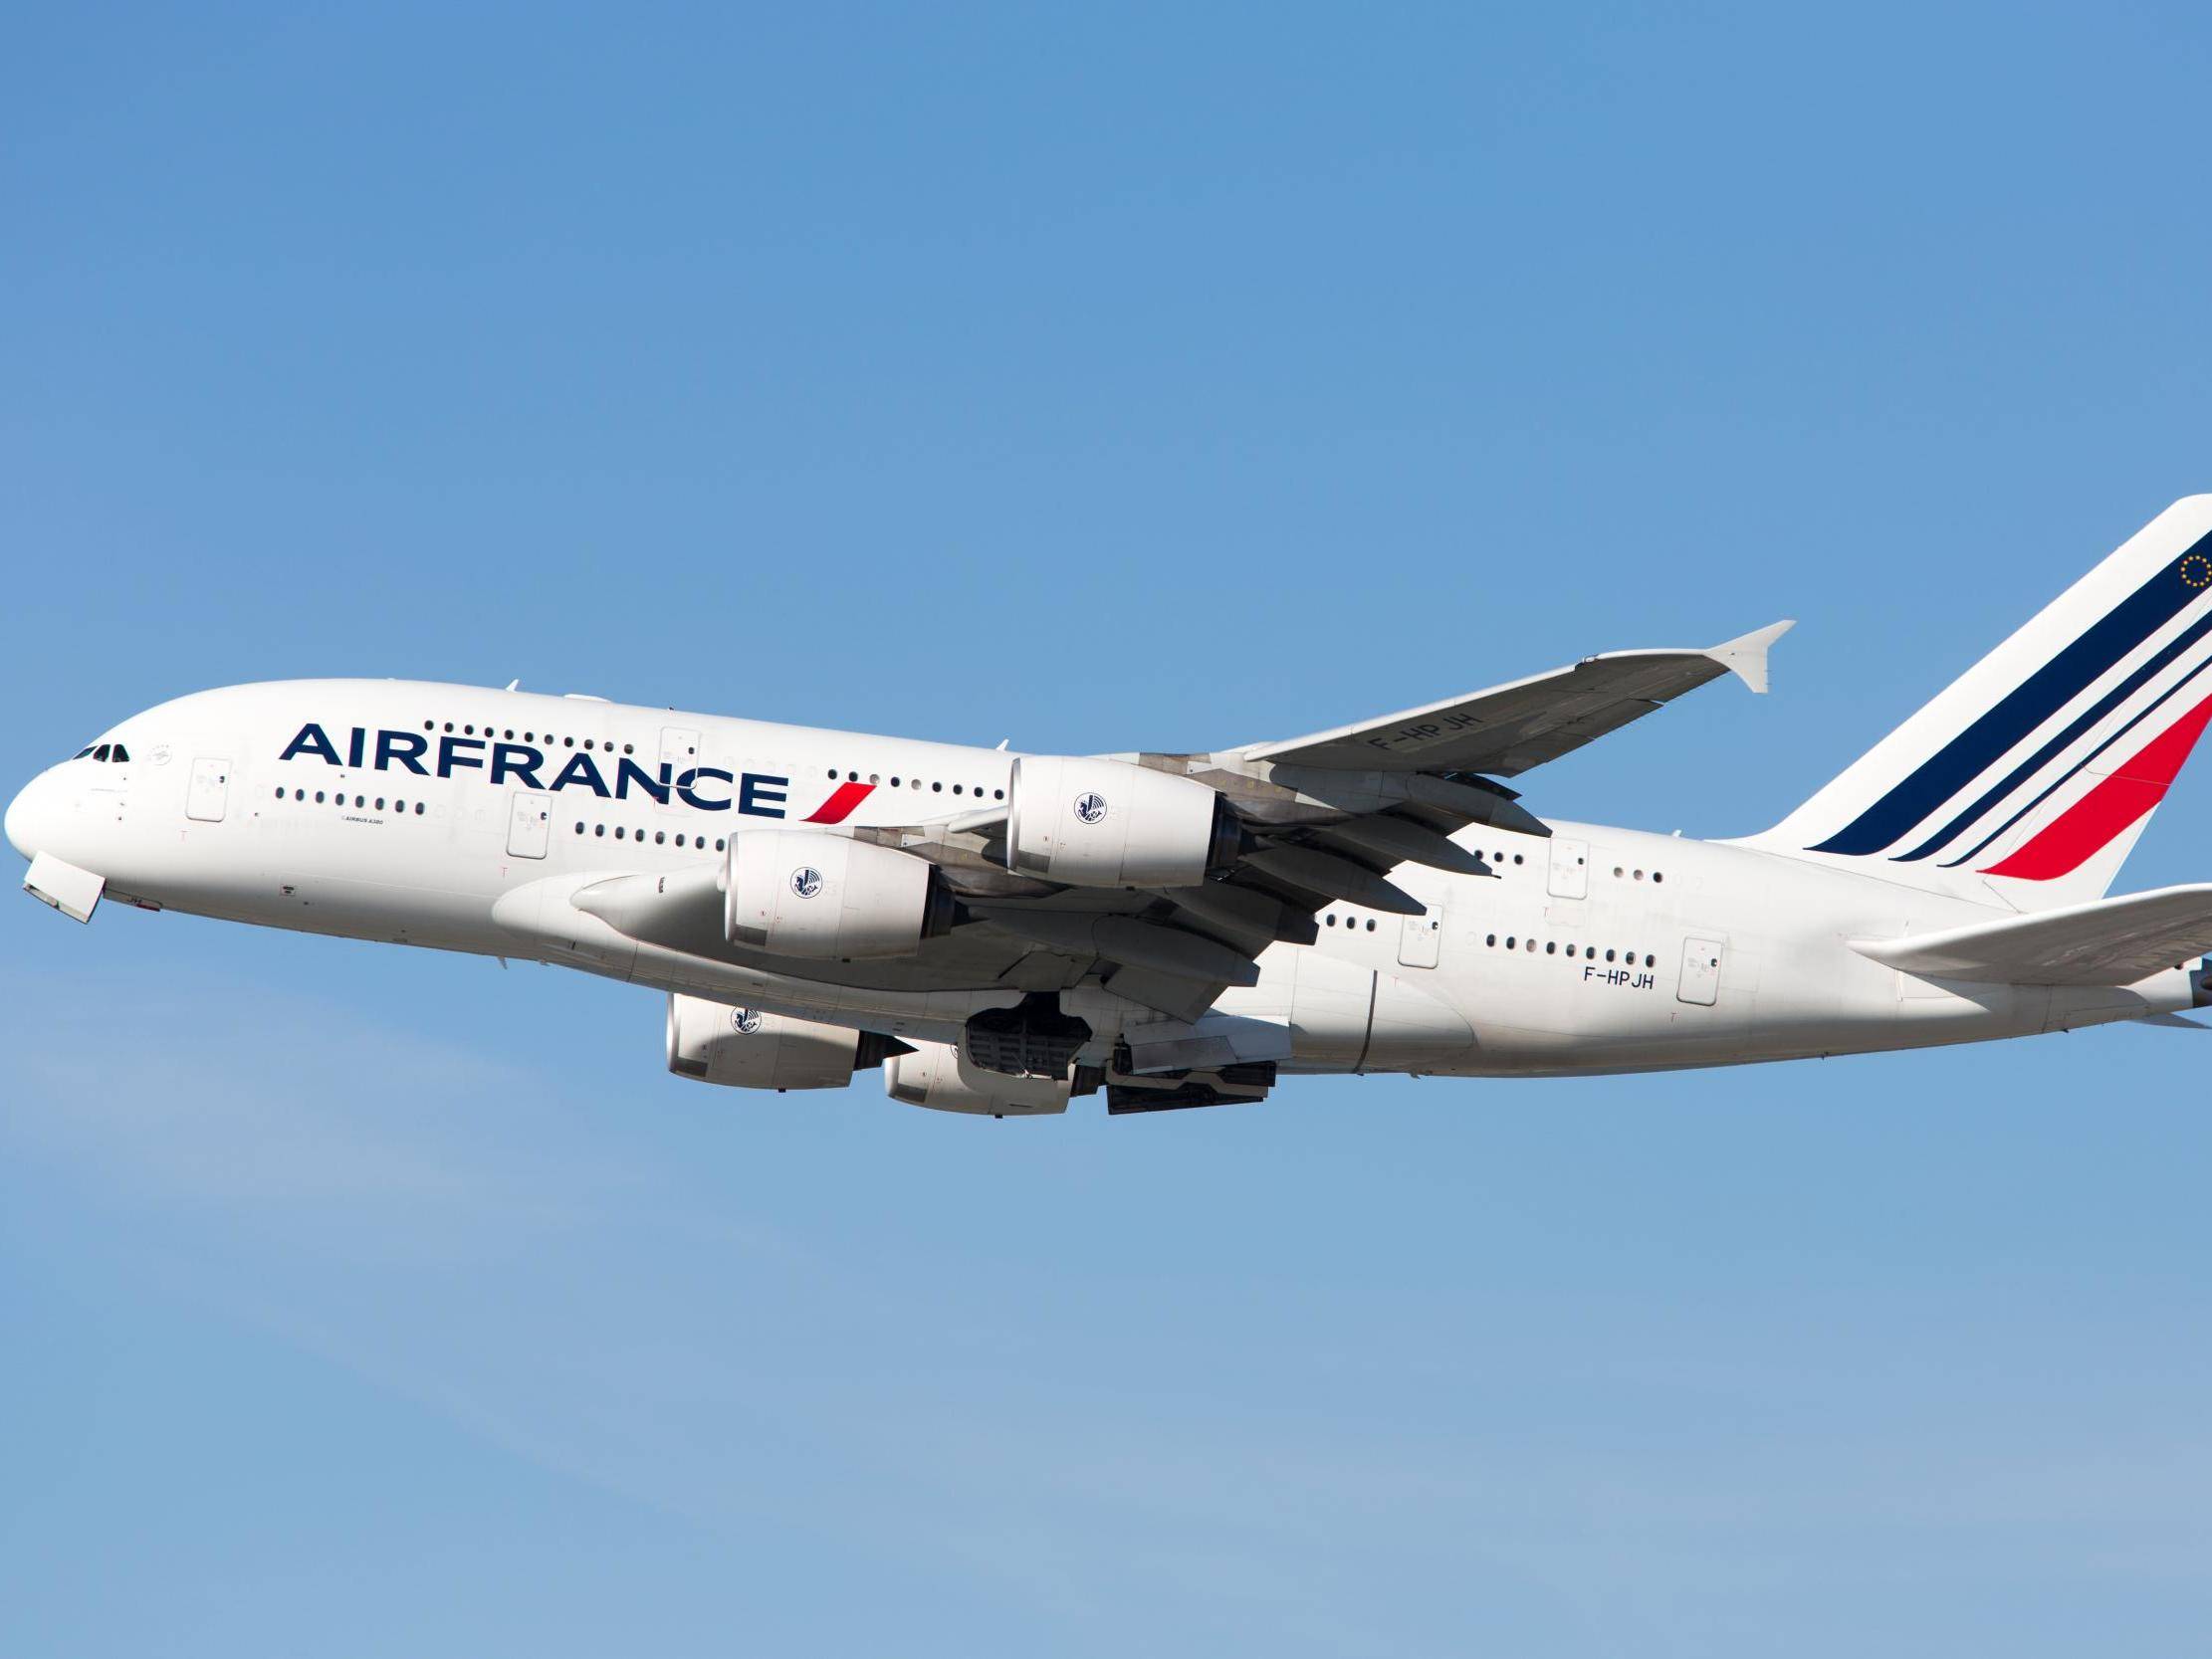 Эйр франс авиакомпания - официальный сайт air france, контакты, авиабилеты и расписание рейсов французские авиалинии 2023